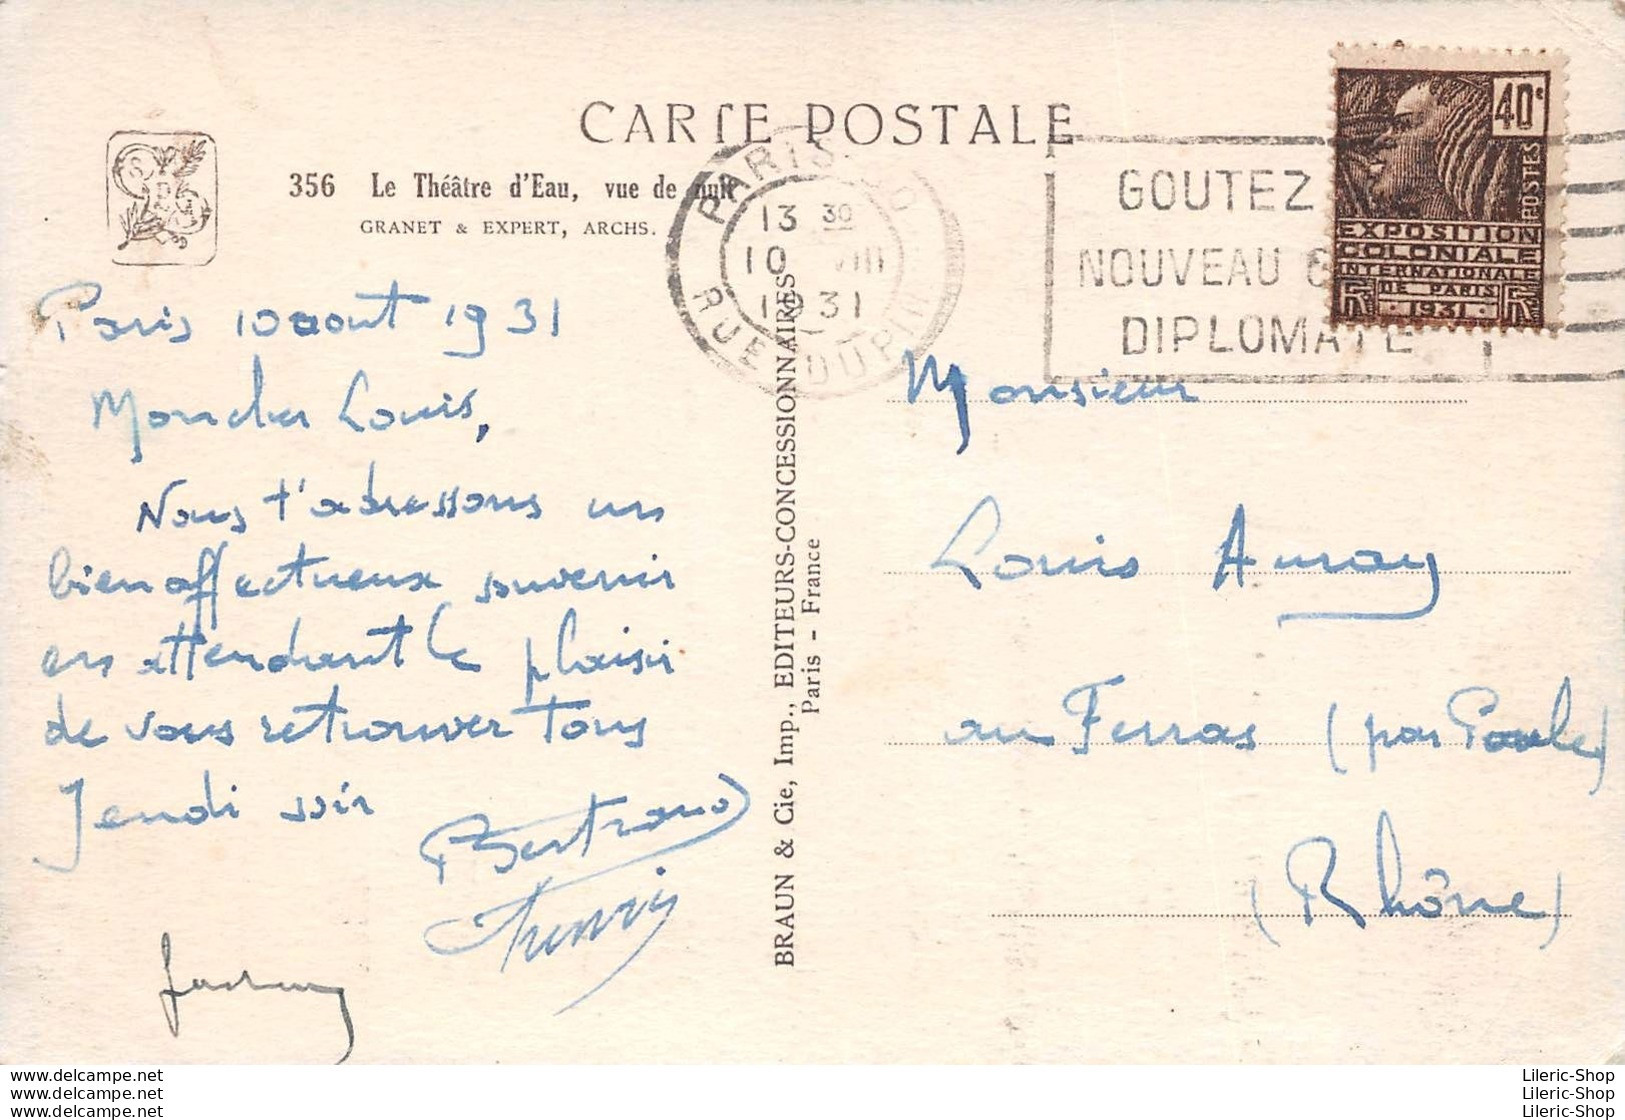 PARIS►75►CPA► EXPOSITION COLONIALE INTERNATIONALE 1931 LE THÉÂTRE D'EAU- ARCHITECTES GRANET & EXPERT►ÉDIT. BRAUN - Mostre